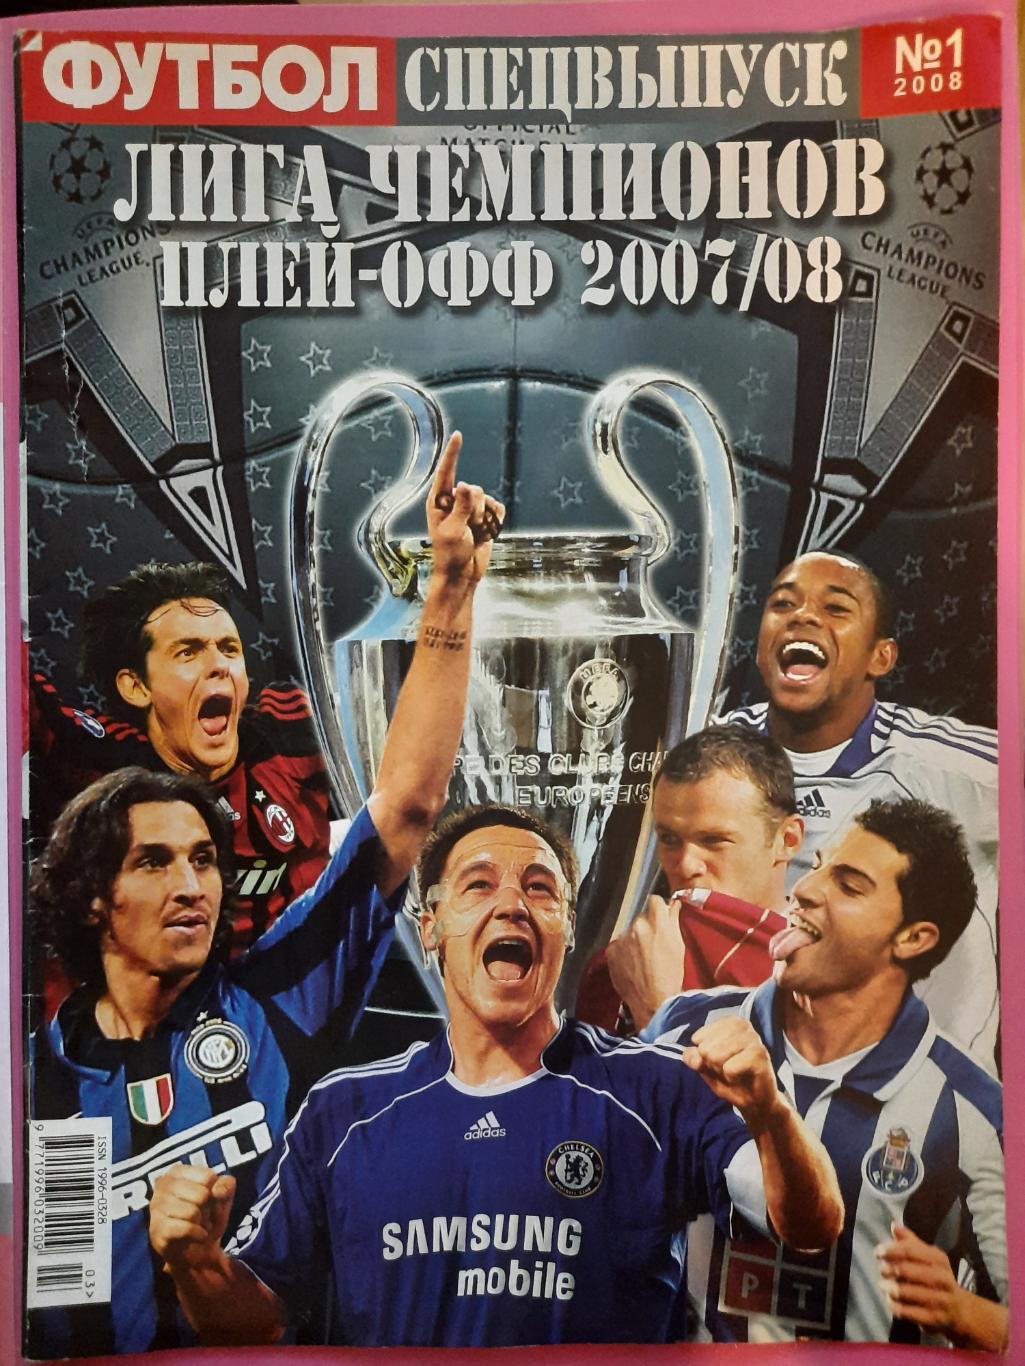 еженедельник Футбол спецвыпуск #1 2008 , Лига Чемпионов плей-офф 2007/08..